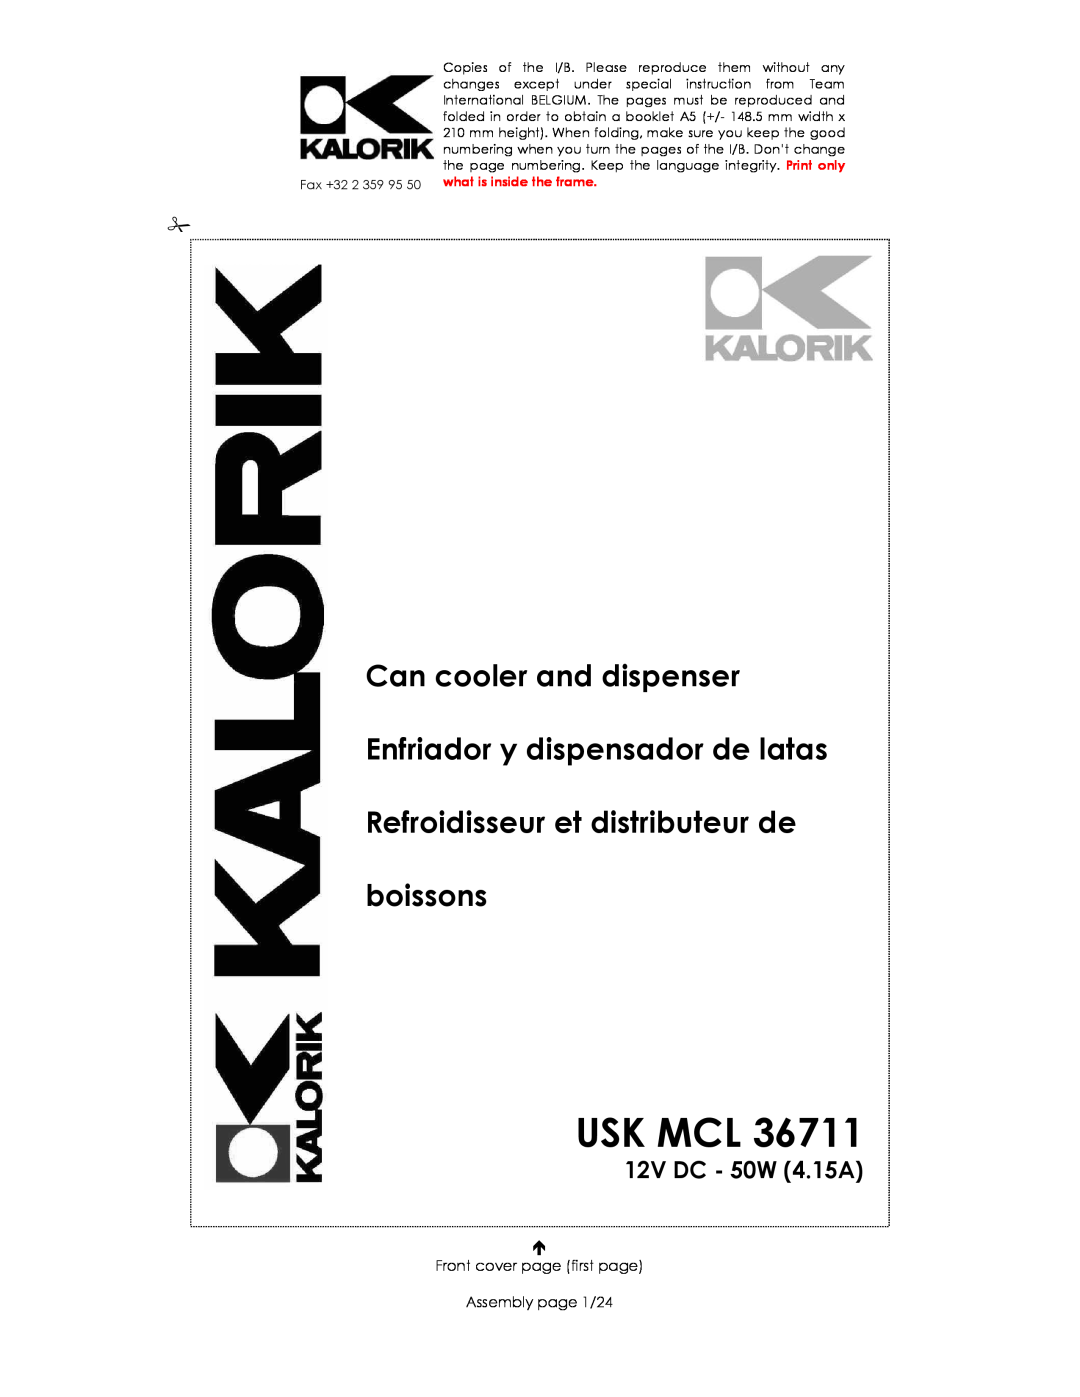 Kalorik USK MCL 36711 manual Usk Mcl, Can cooler and dispenser, Enfriador y dispensador de latas, 12V DC - 50W 4.15A 